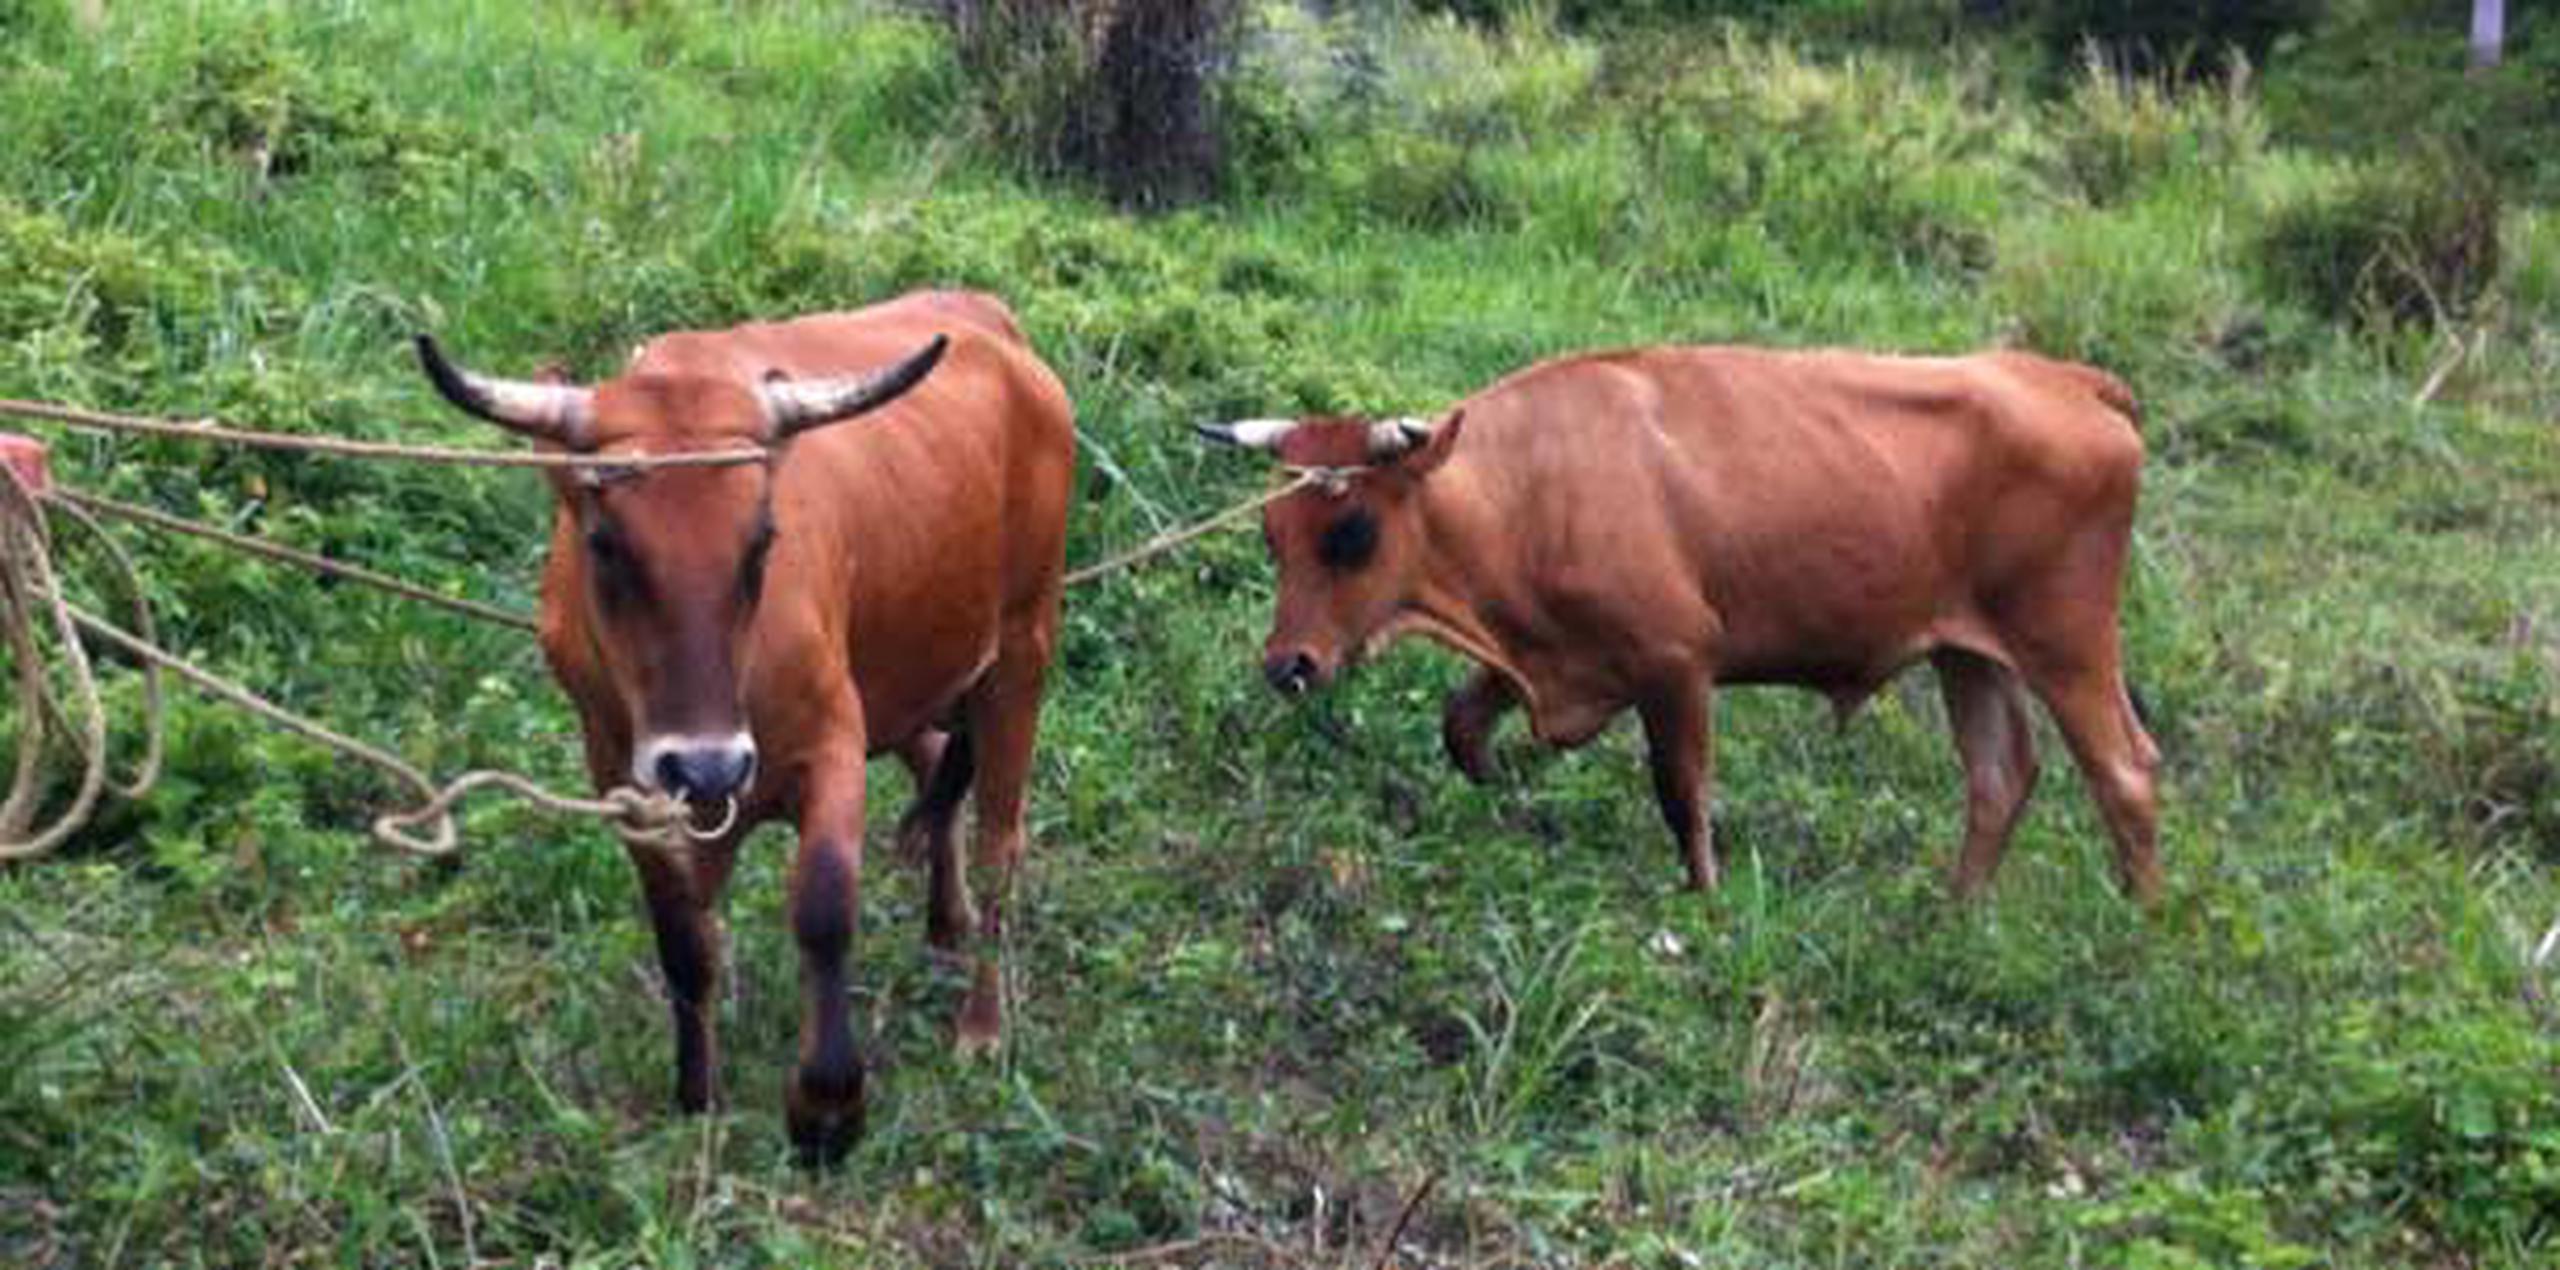 Los bueyes Caramelo y Brillante, al parecer, están enamorados de la misma vaca. (Suministrada)